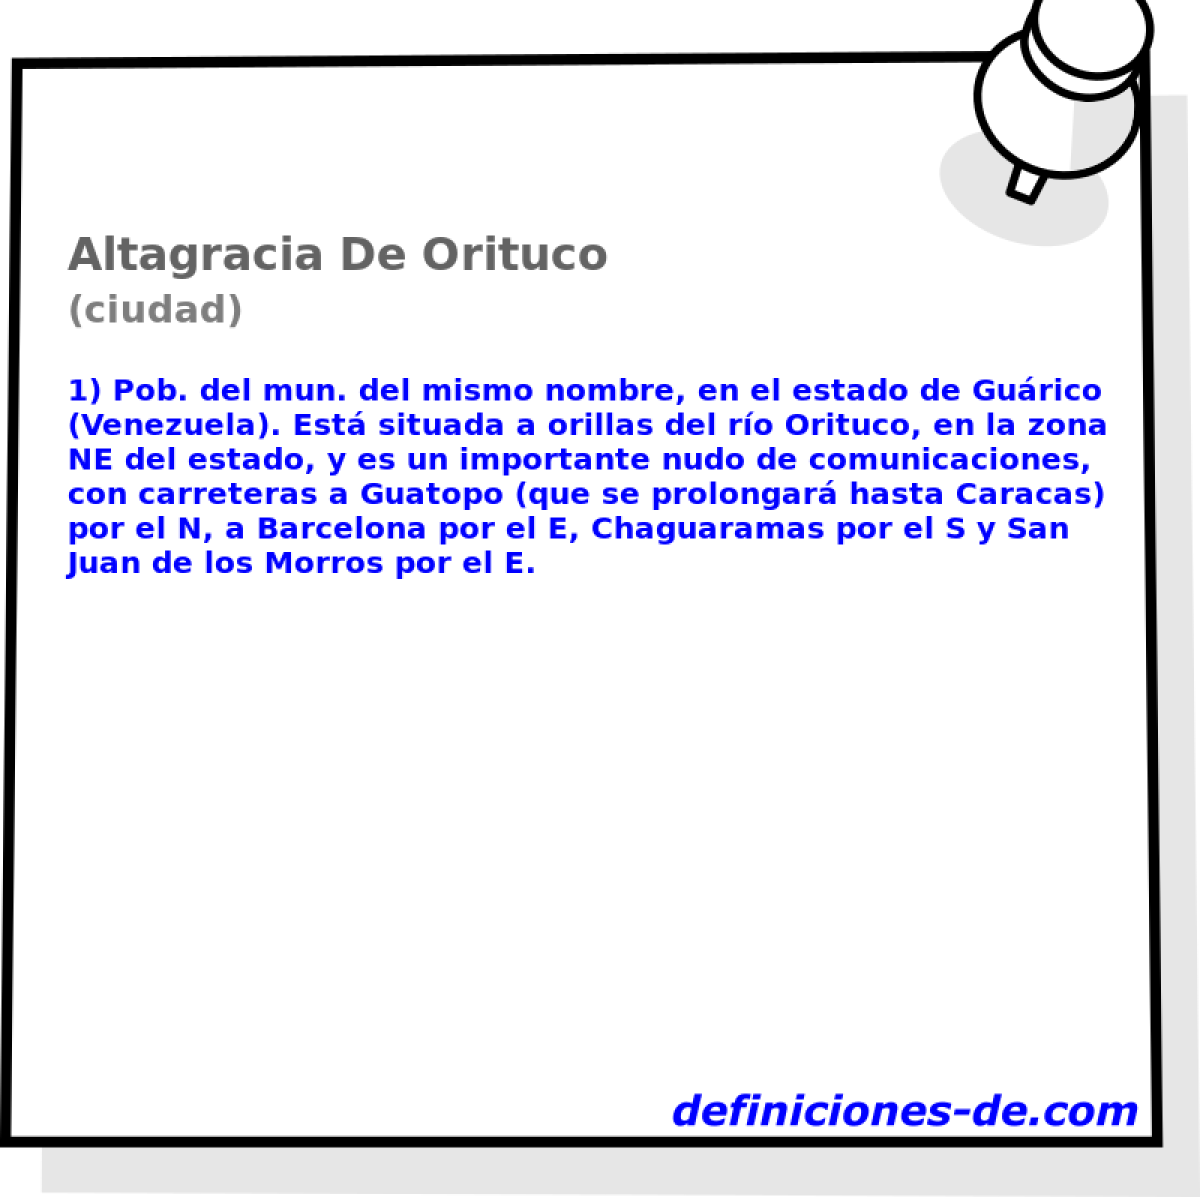 Altagracia De Orituco (ciudad)